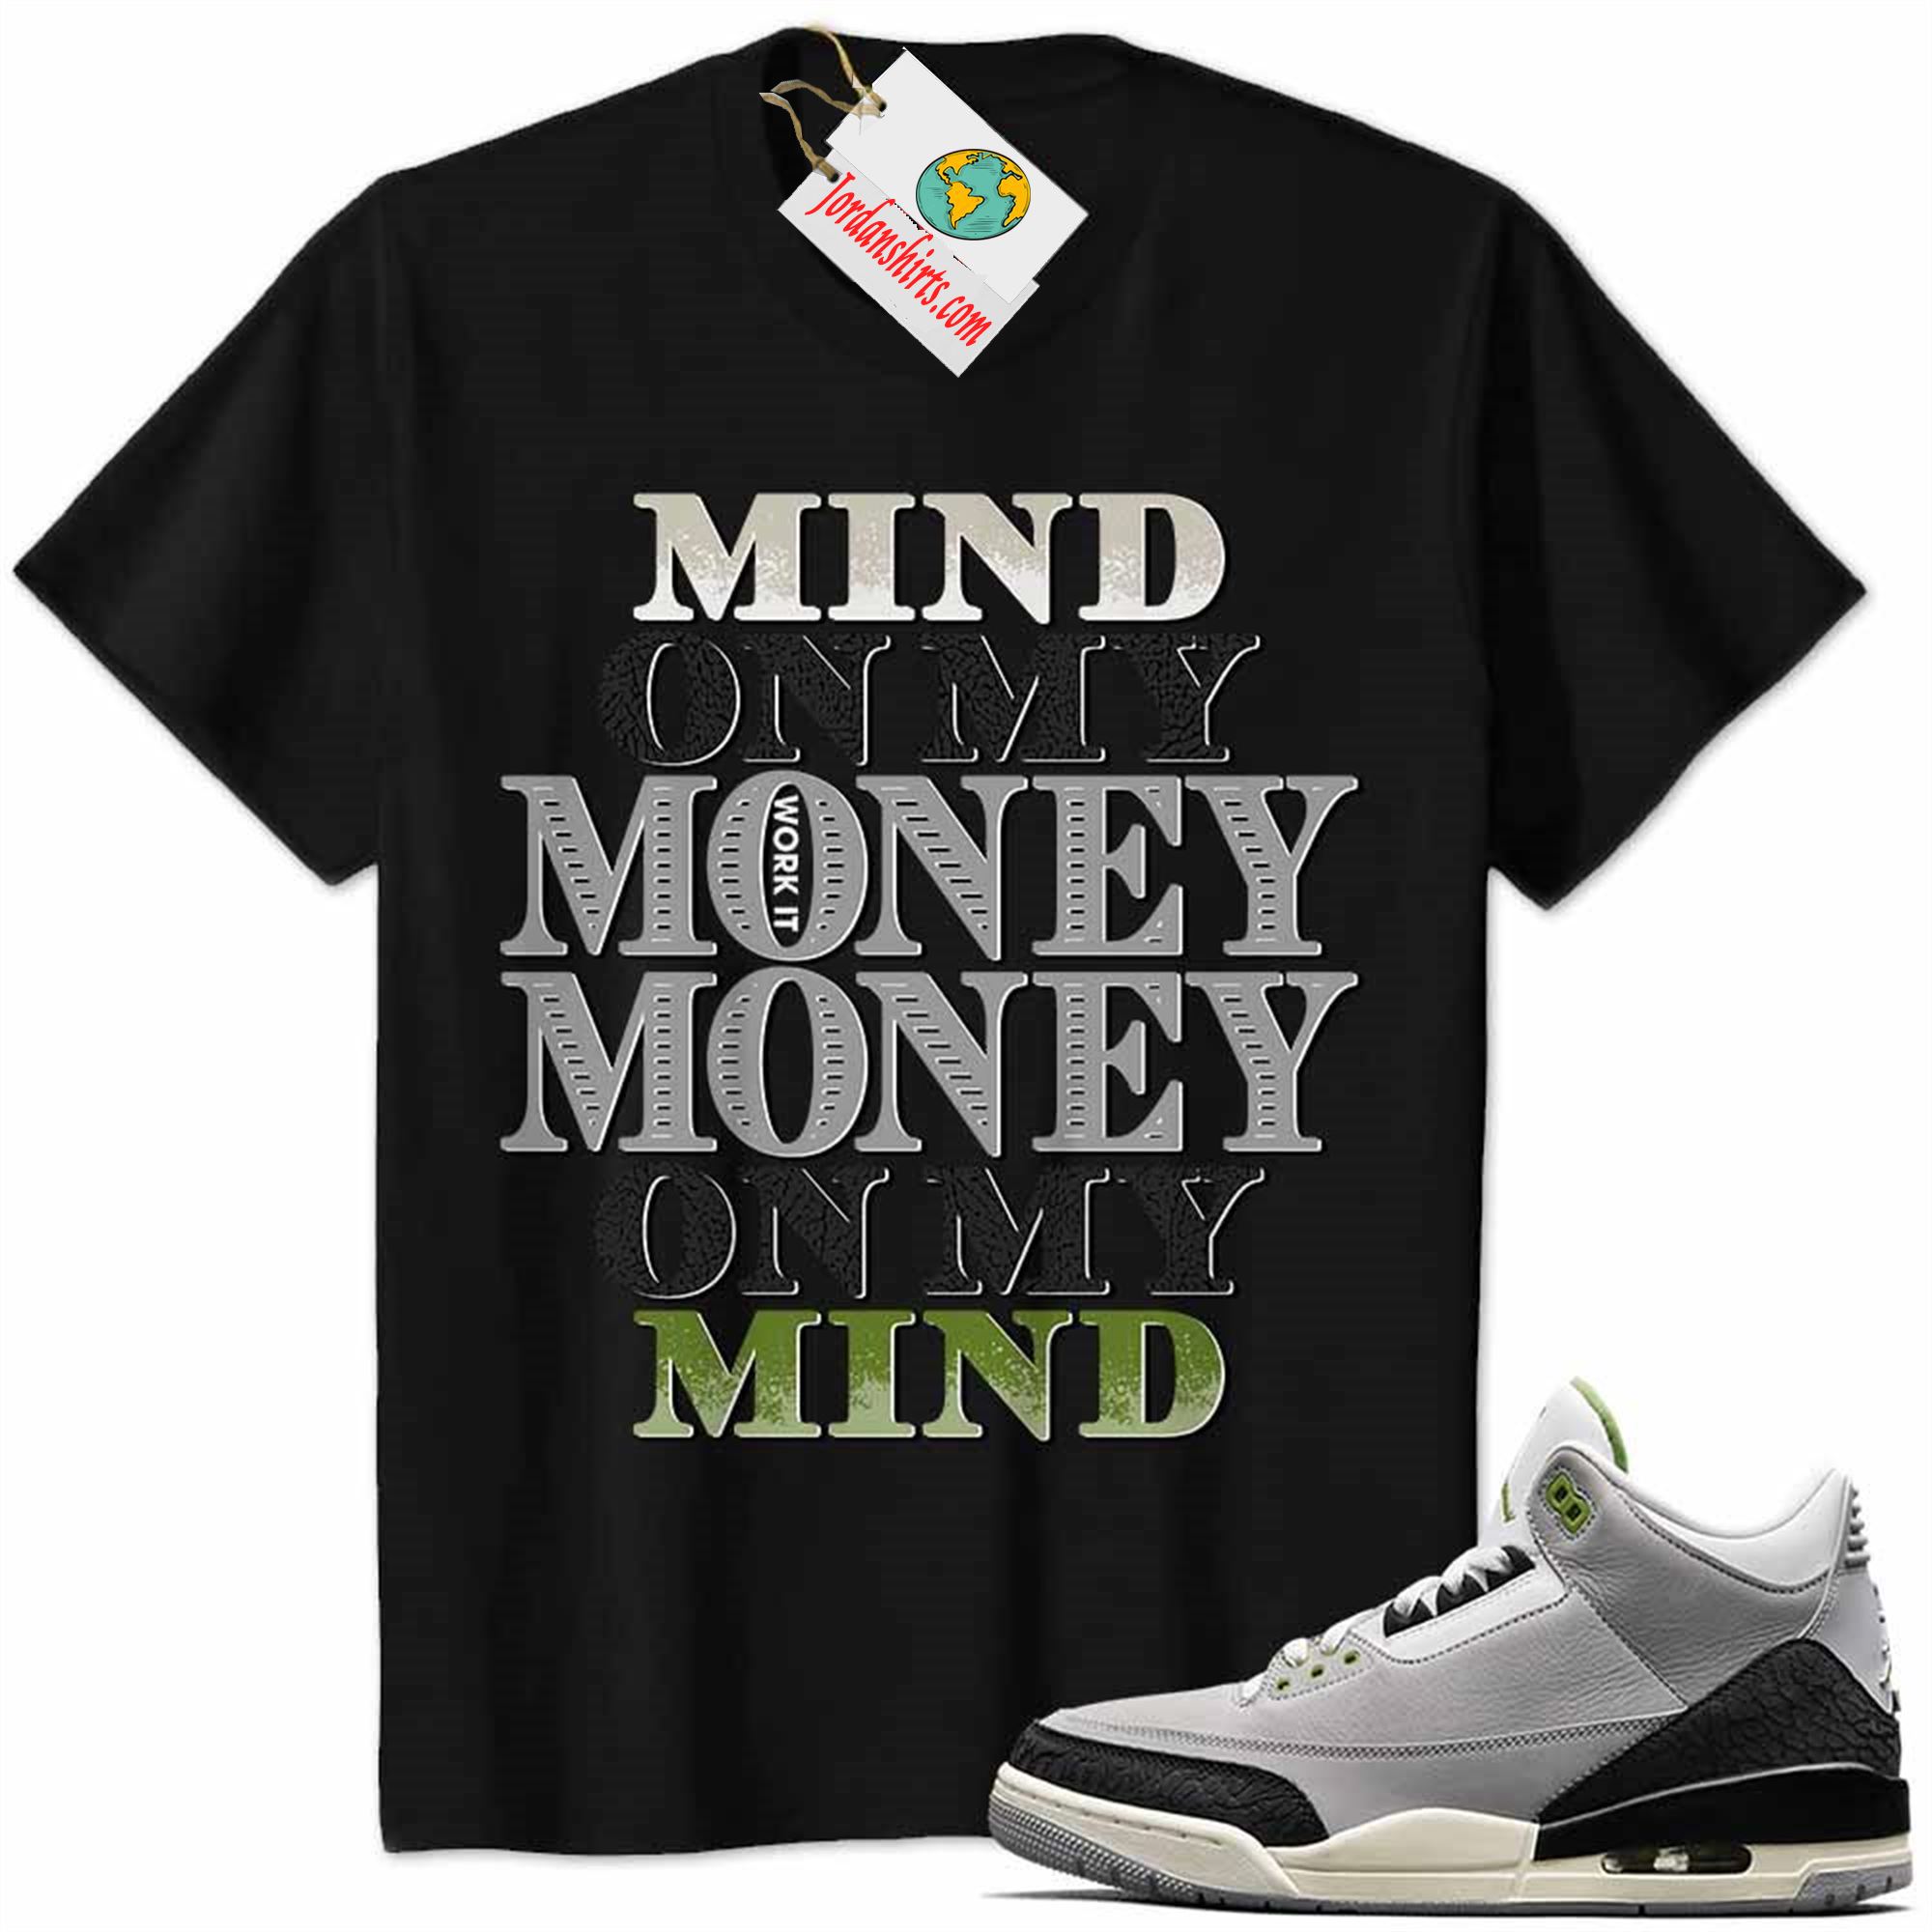 Jordan 3 Shirt, Jordan 3 Chlorophyll Shirt Mind On My Money Money On My Mind Black Size Up To 5xl